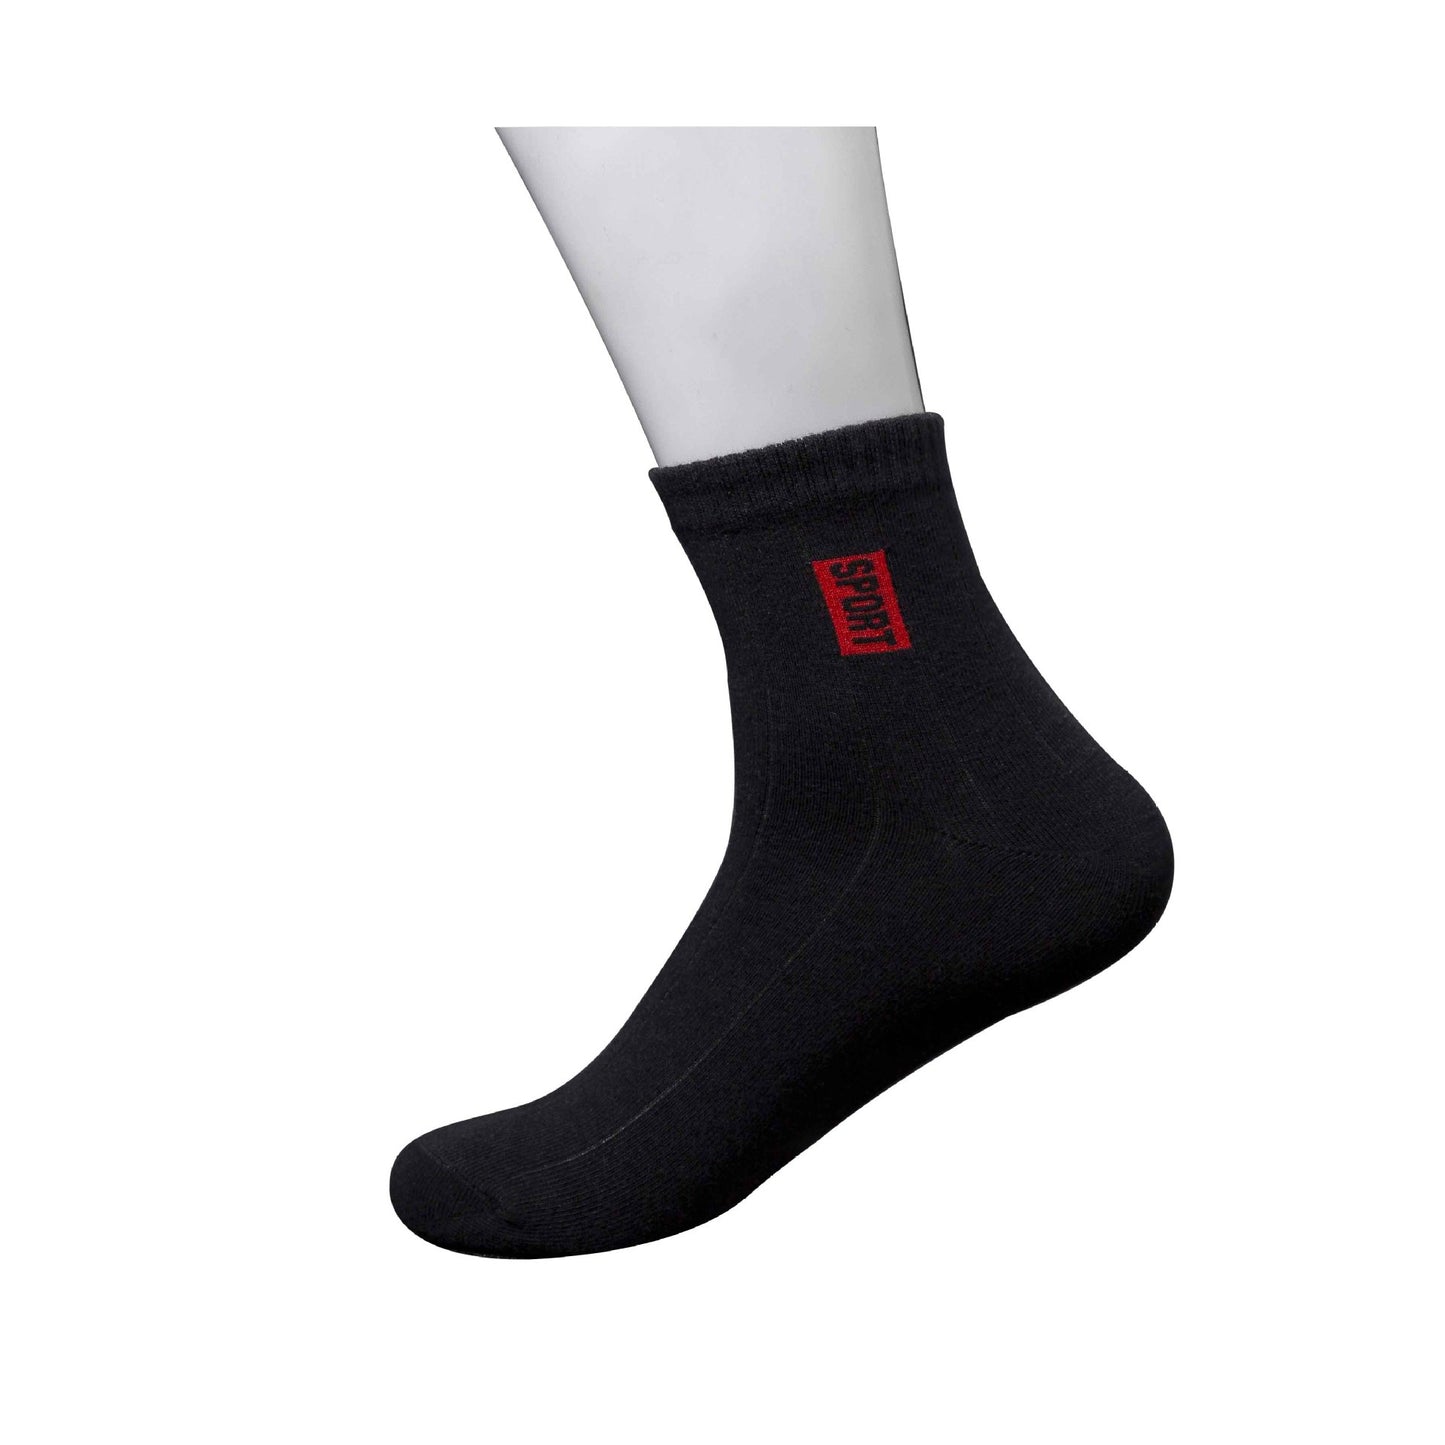 Breathable Men's Socks Set-Casual Trendy Socks for Everyday Comfort